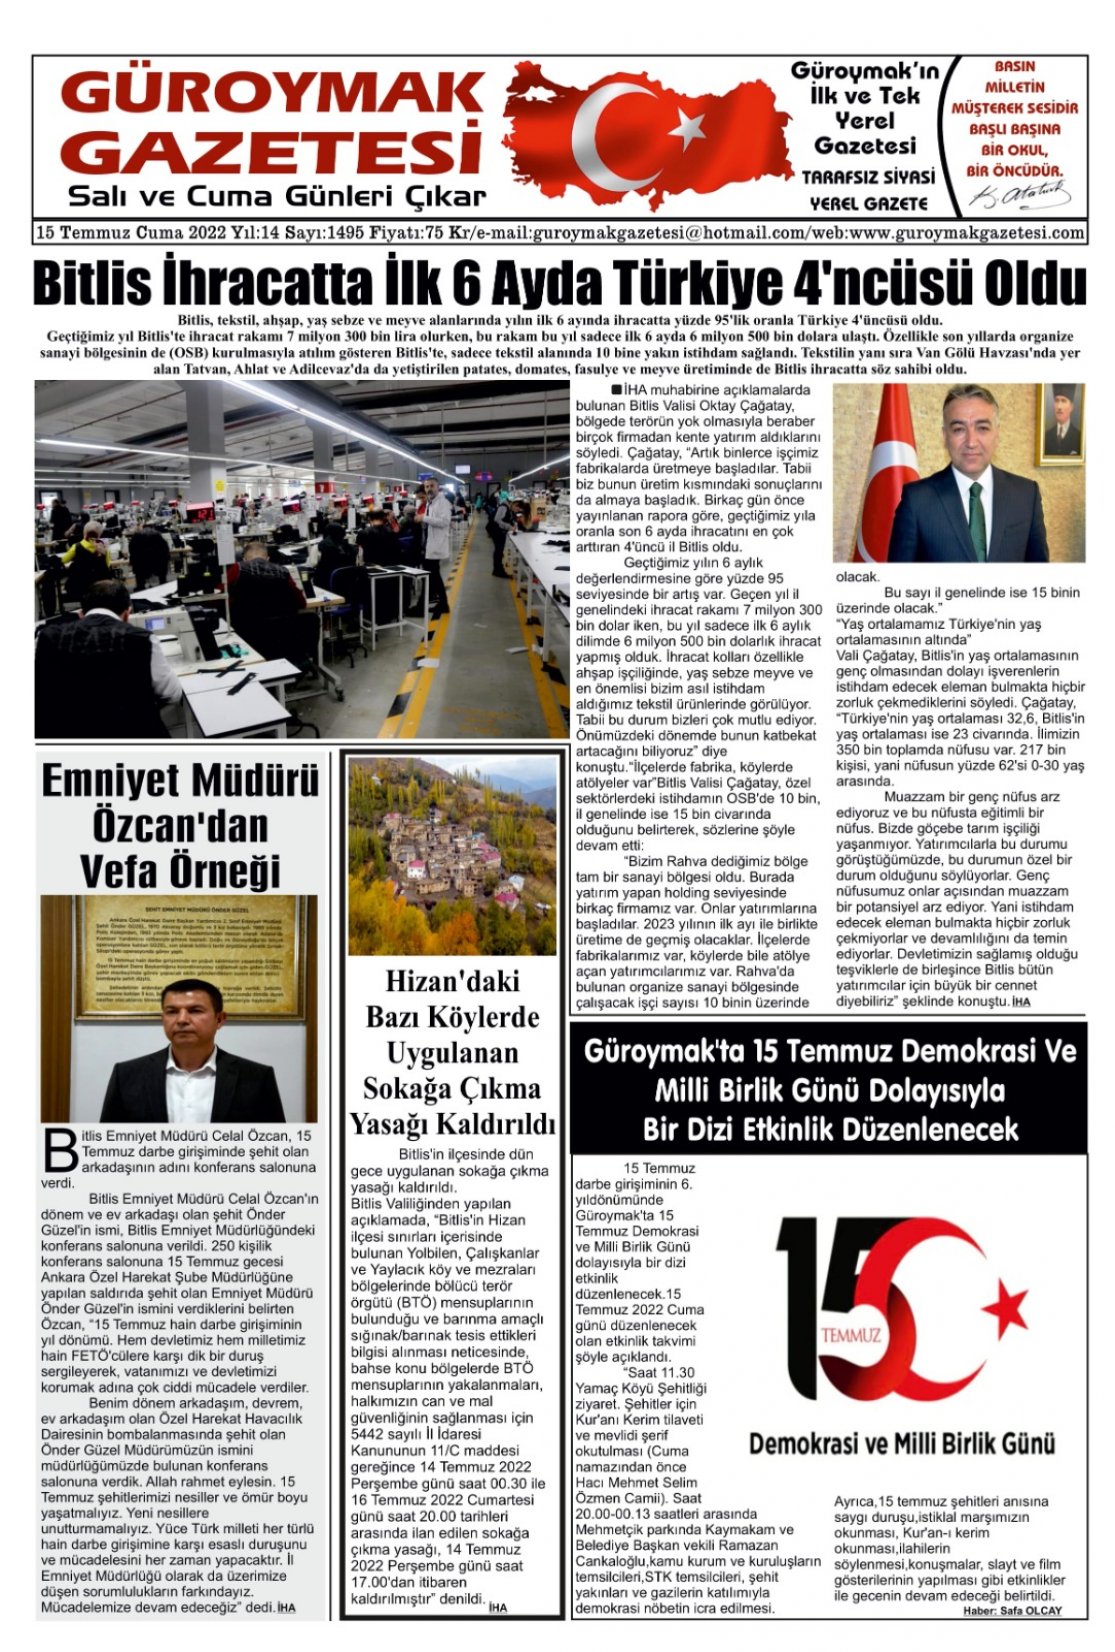 Güroymak Gazetesi WhatsApp Image 2022-07-15 at 03.24.44.jpeg Sayılı Gazete Küpürü